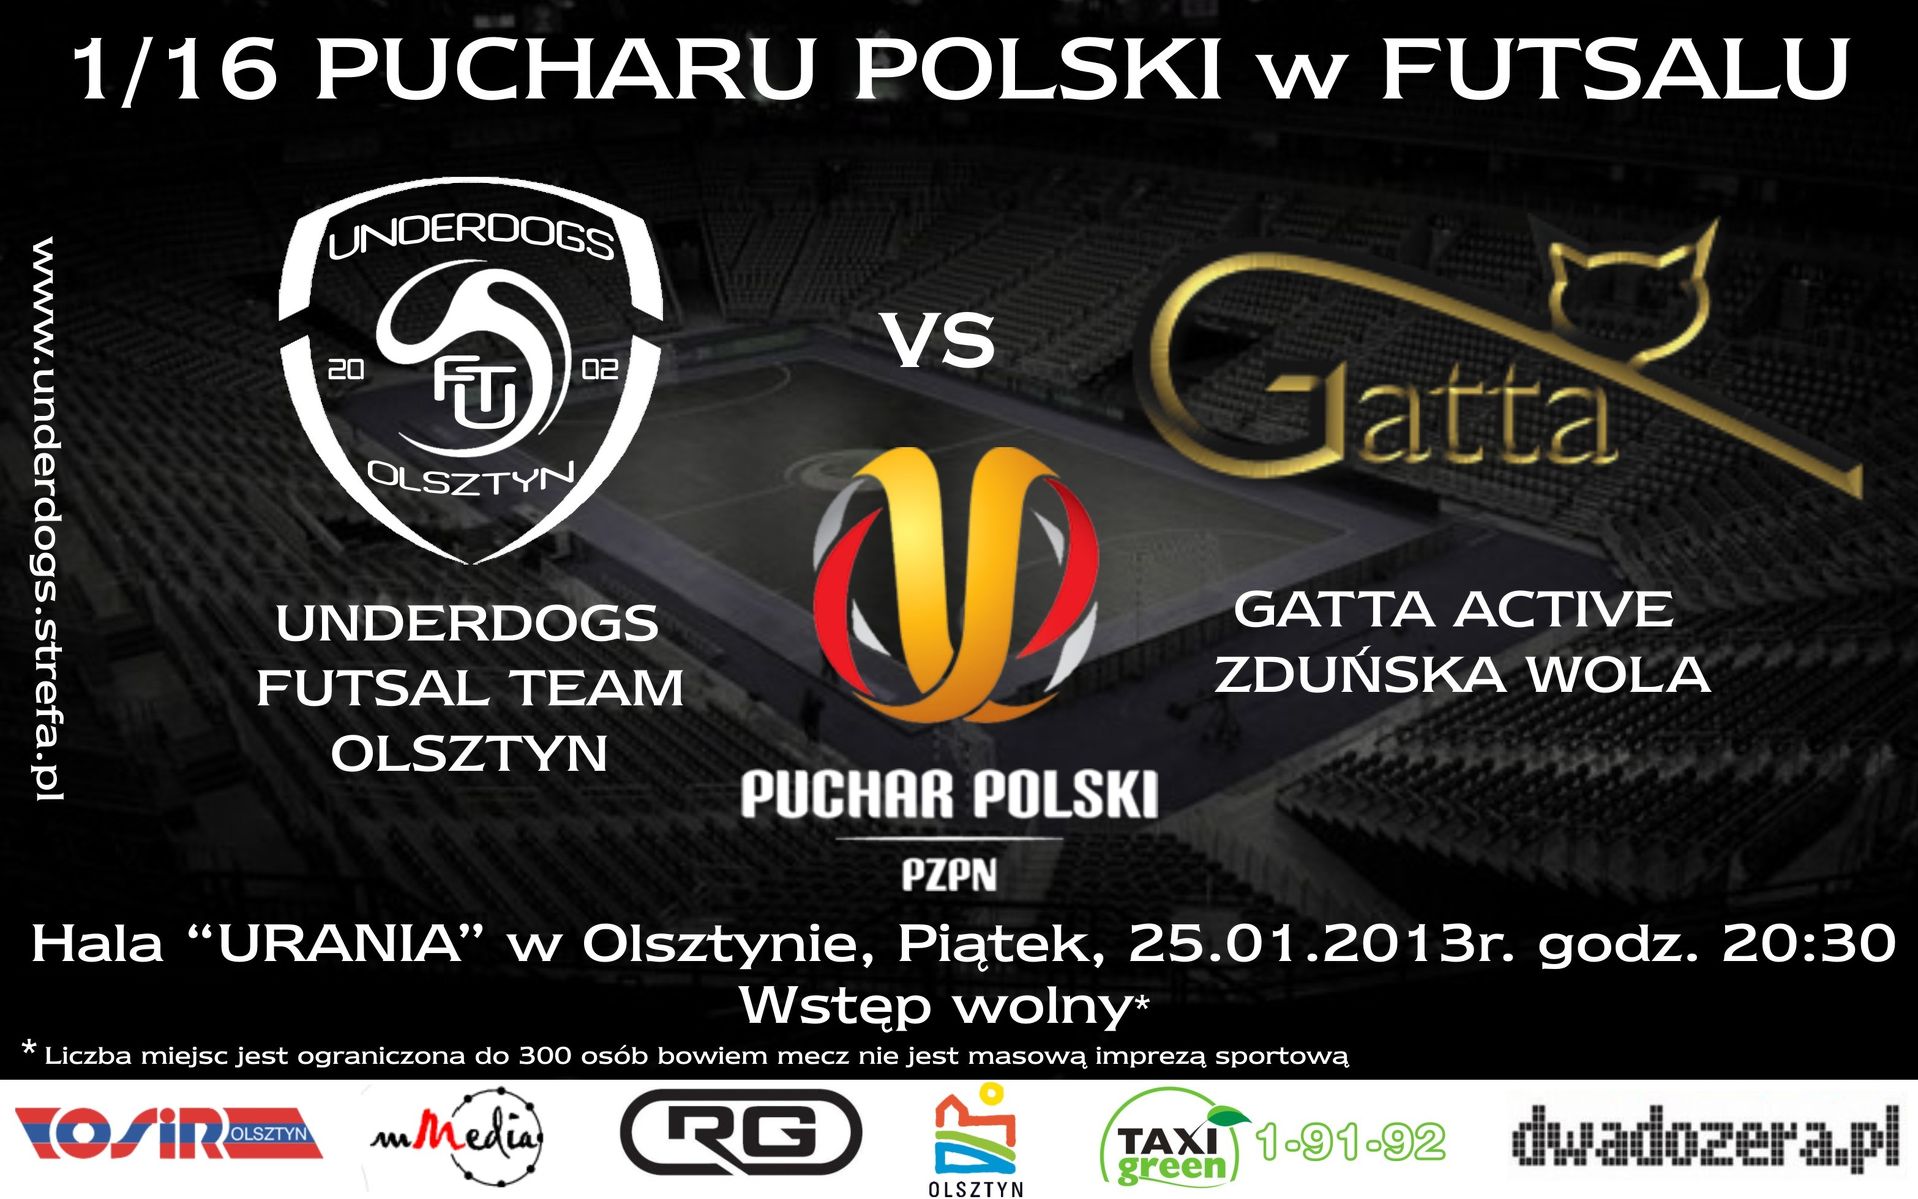 Plakat promujący mecz w Olsztynie. Fot. Materiały prasowe organizatorów